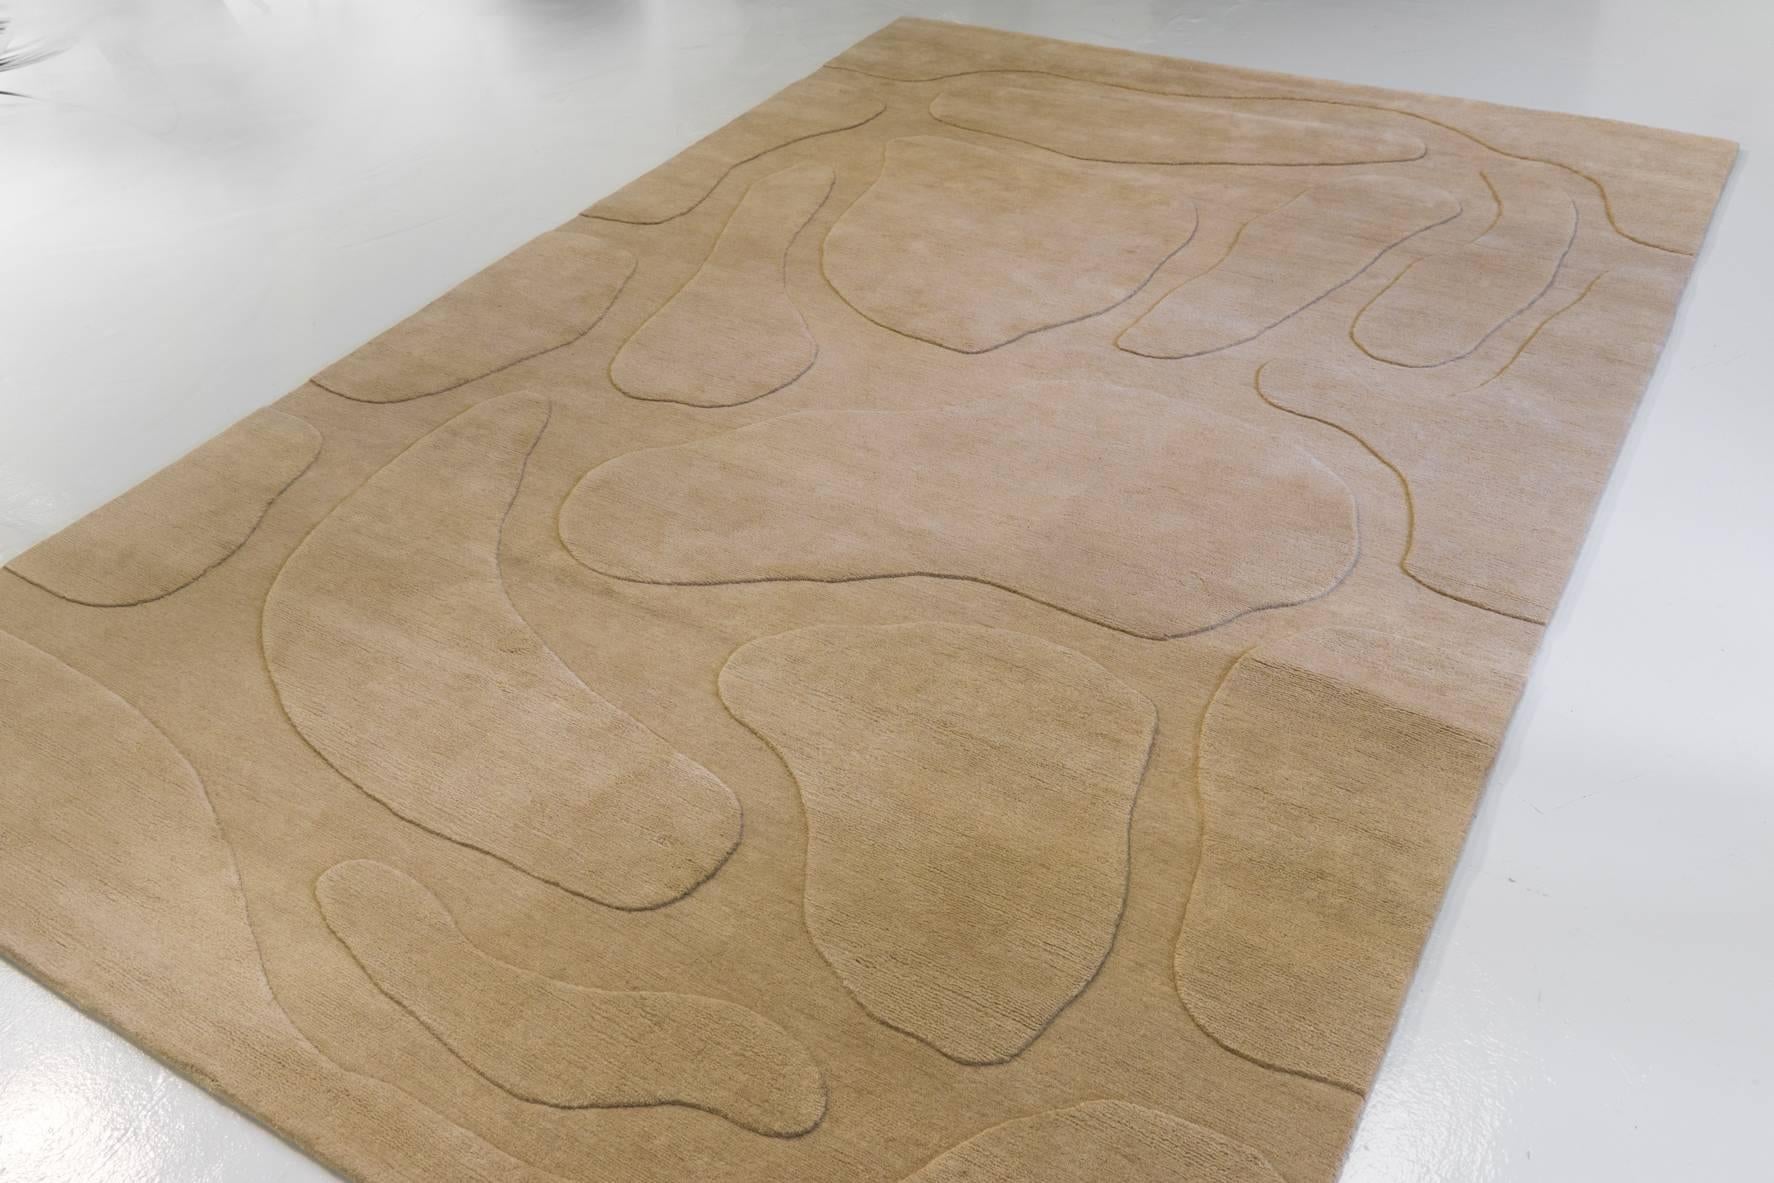 Luxuriöser Teppich, entworfen vom Pariser Künstler Jacques Jarrige und hergestellt von Diurne. Für seinen ersten Teppichentwurf wählte Jarrige eine Variante seiner skulpturalen Schirme, die das Zusammenspiel von Voll- und Hohlräumen auf diesem